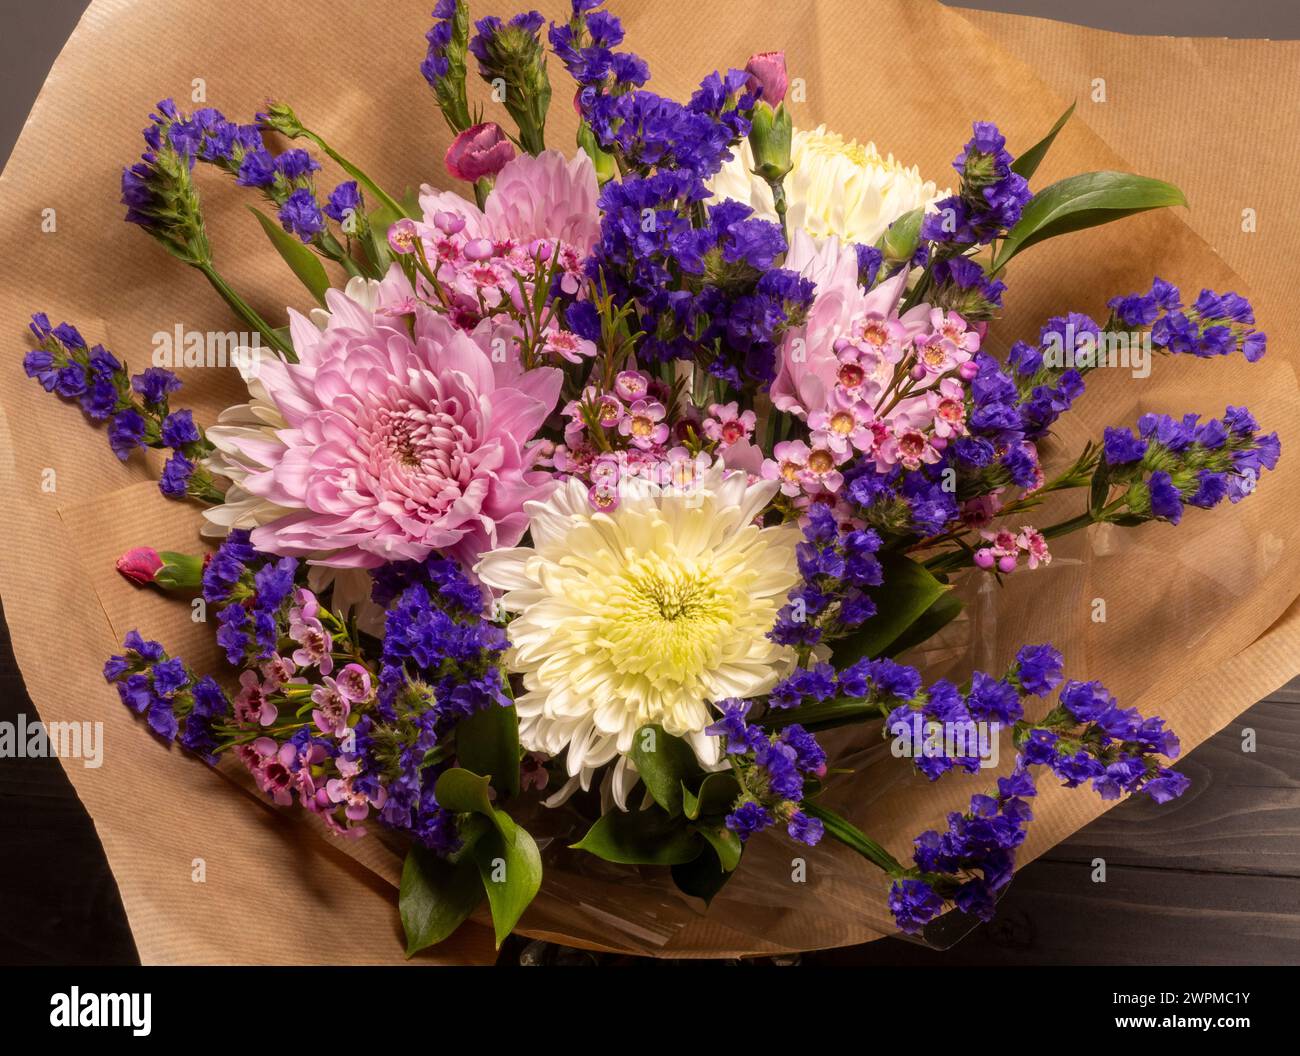 Vista dall'alto di un bouquet di fiori rosa e viola avvolti in carta marrone. Foto Stock